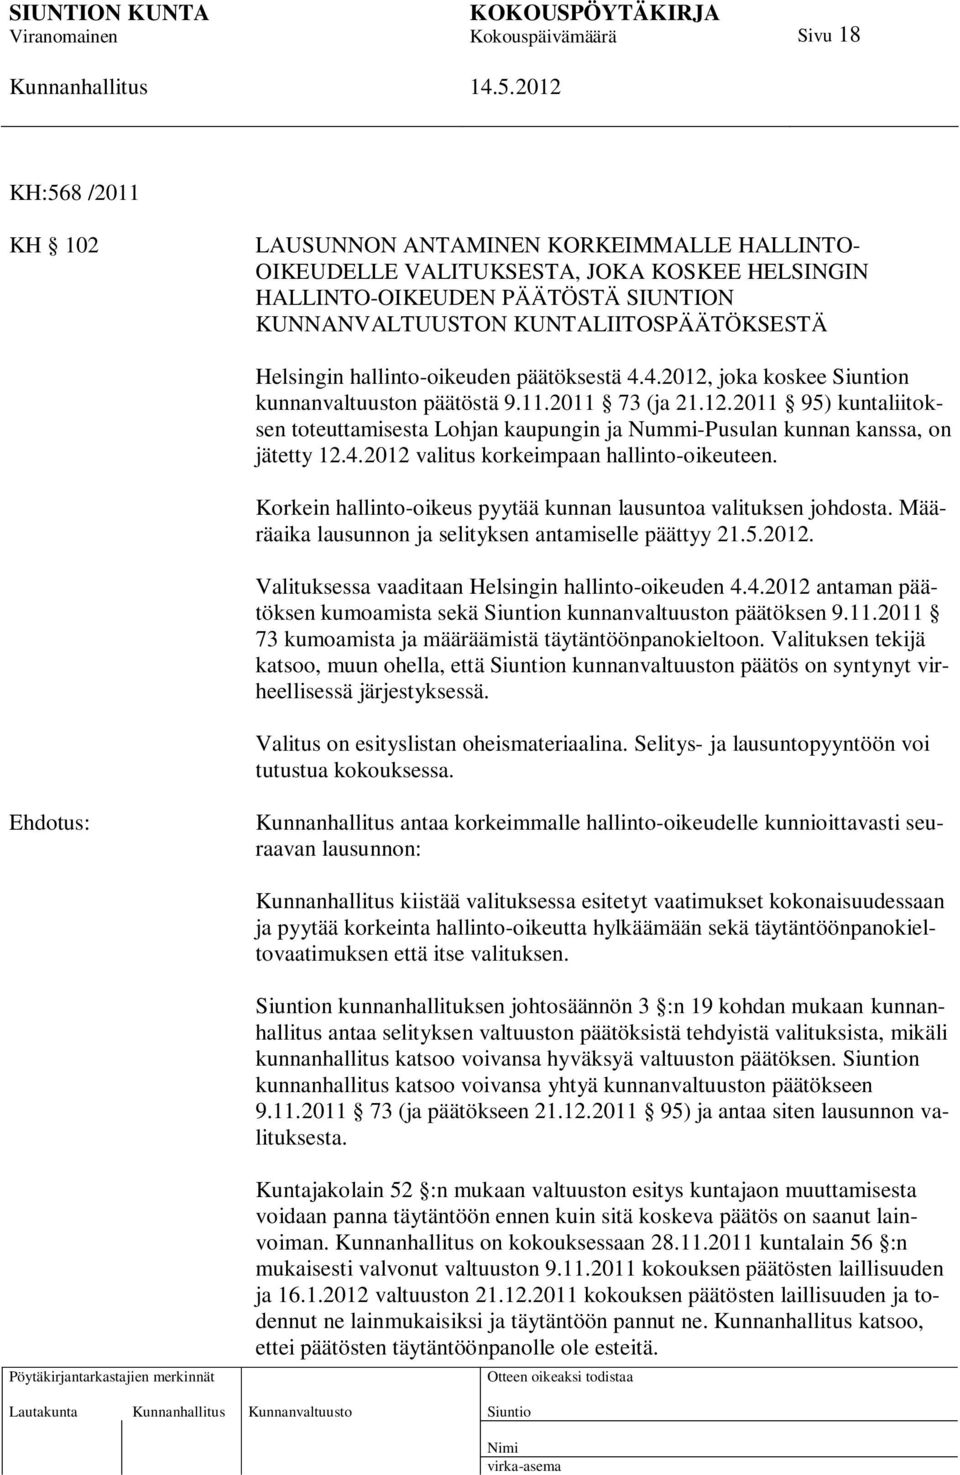 4.2012 valitus korkeimpaan hallinto-oikeuteen. Korkein hallinto-oikeus pyytää kunnan lausuntoa valituksen johdosta. Määräaika lausunnon ja selityksen antamiselle päättyy 21.5.2012. Valituksessa vaaditaan Helsingin hallinto-oikeuden 4.